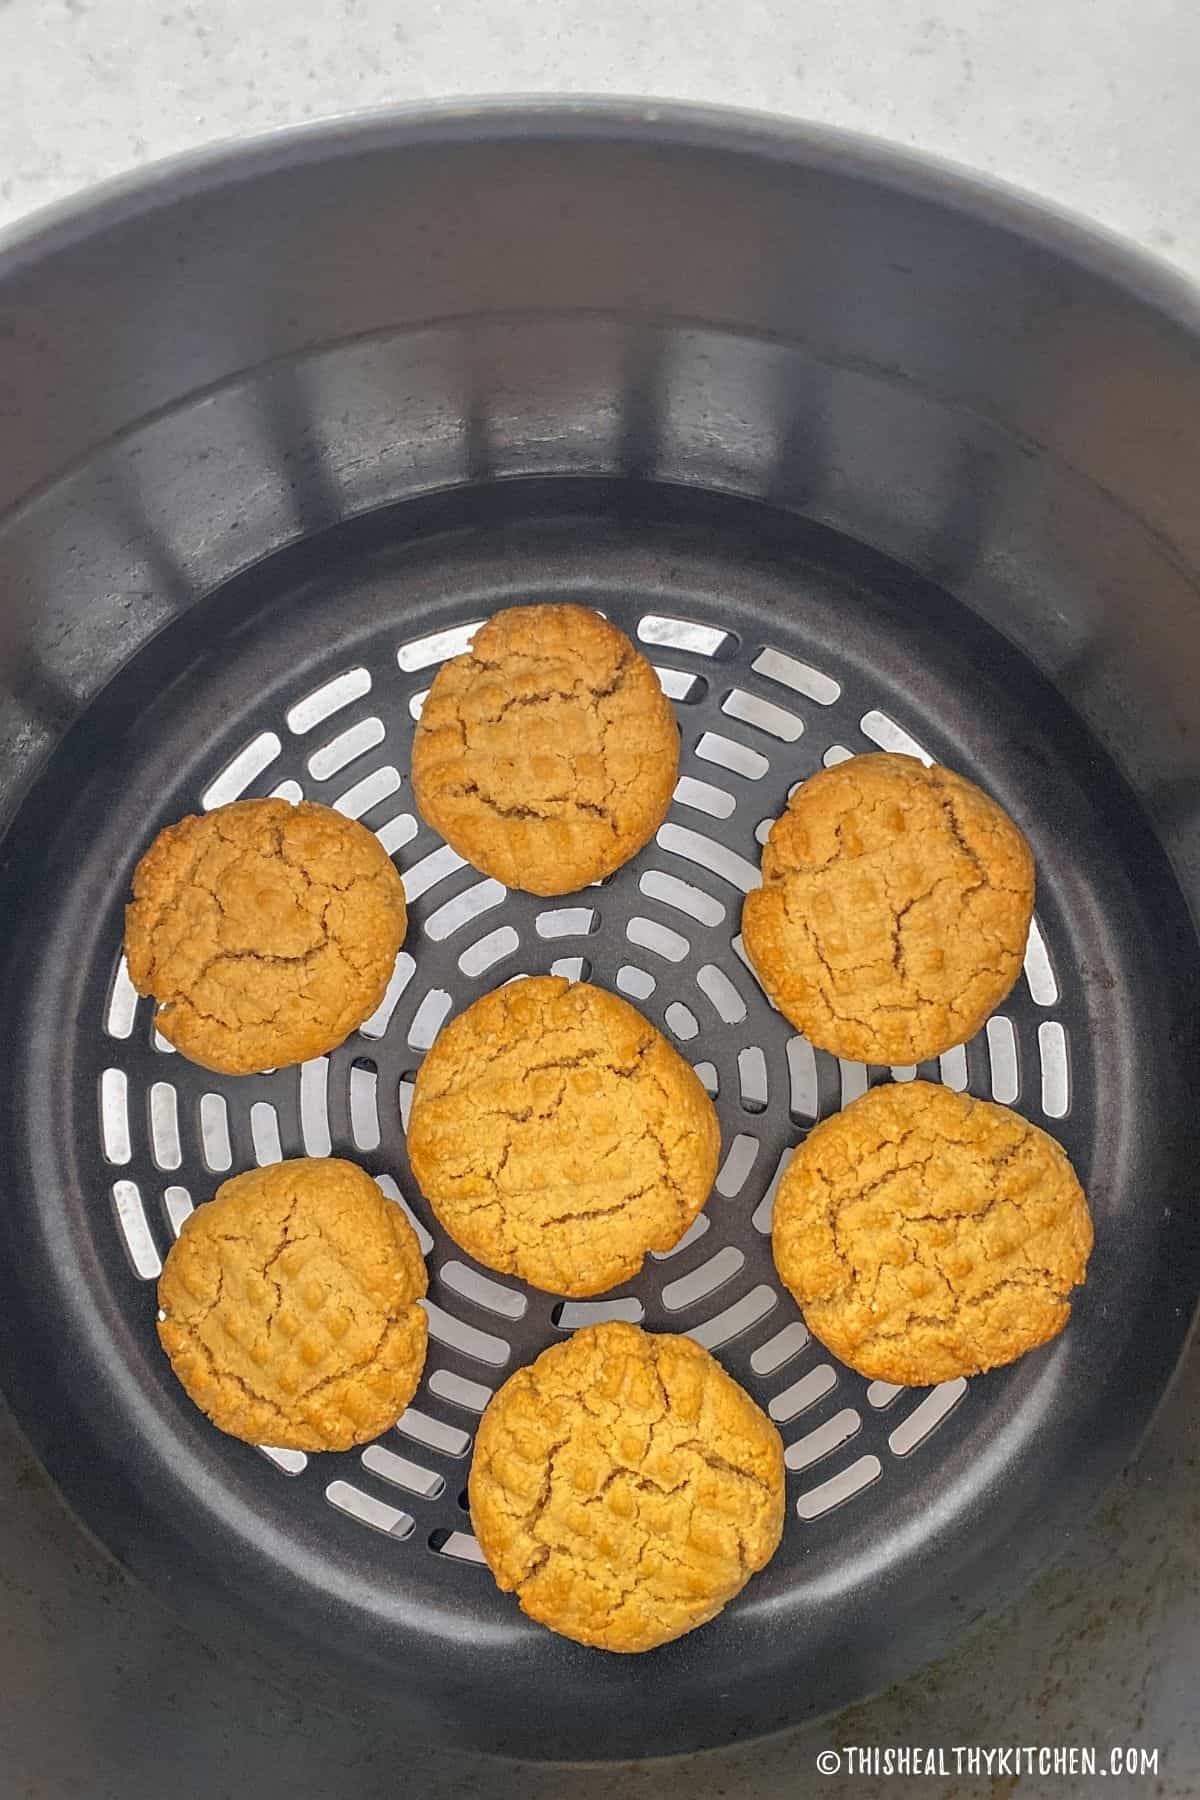 Baked cookies inside air frying basket.